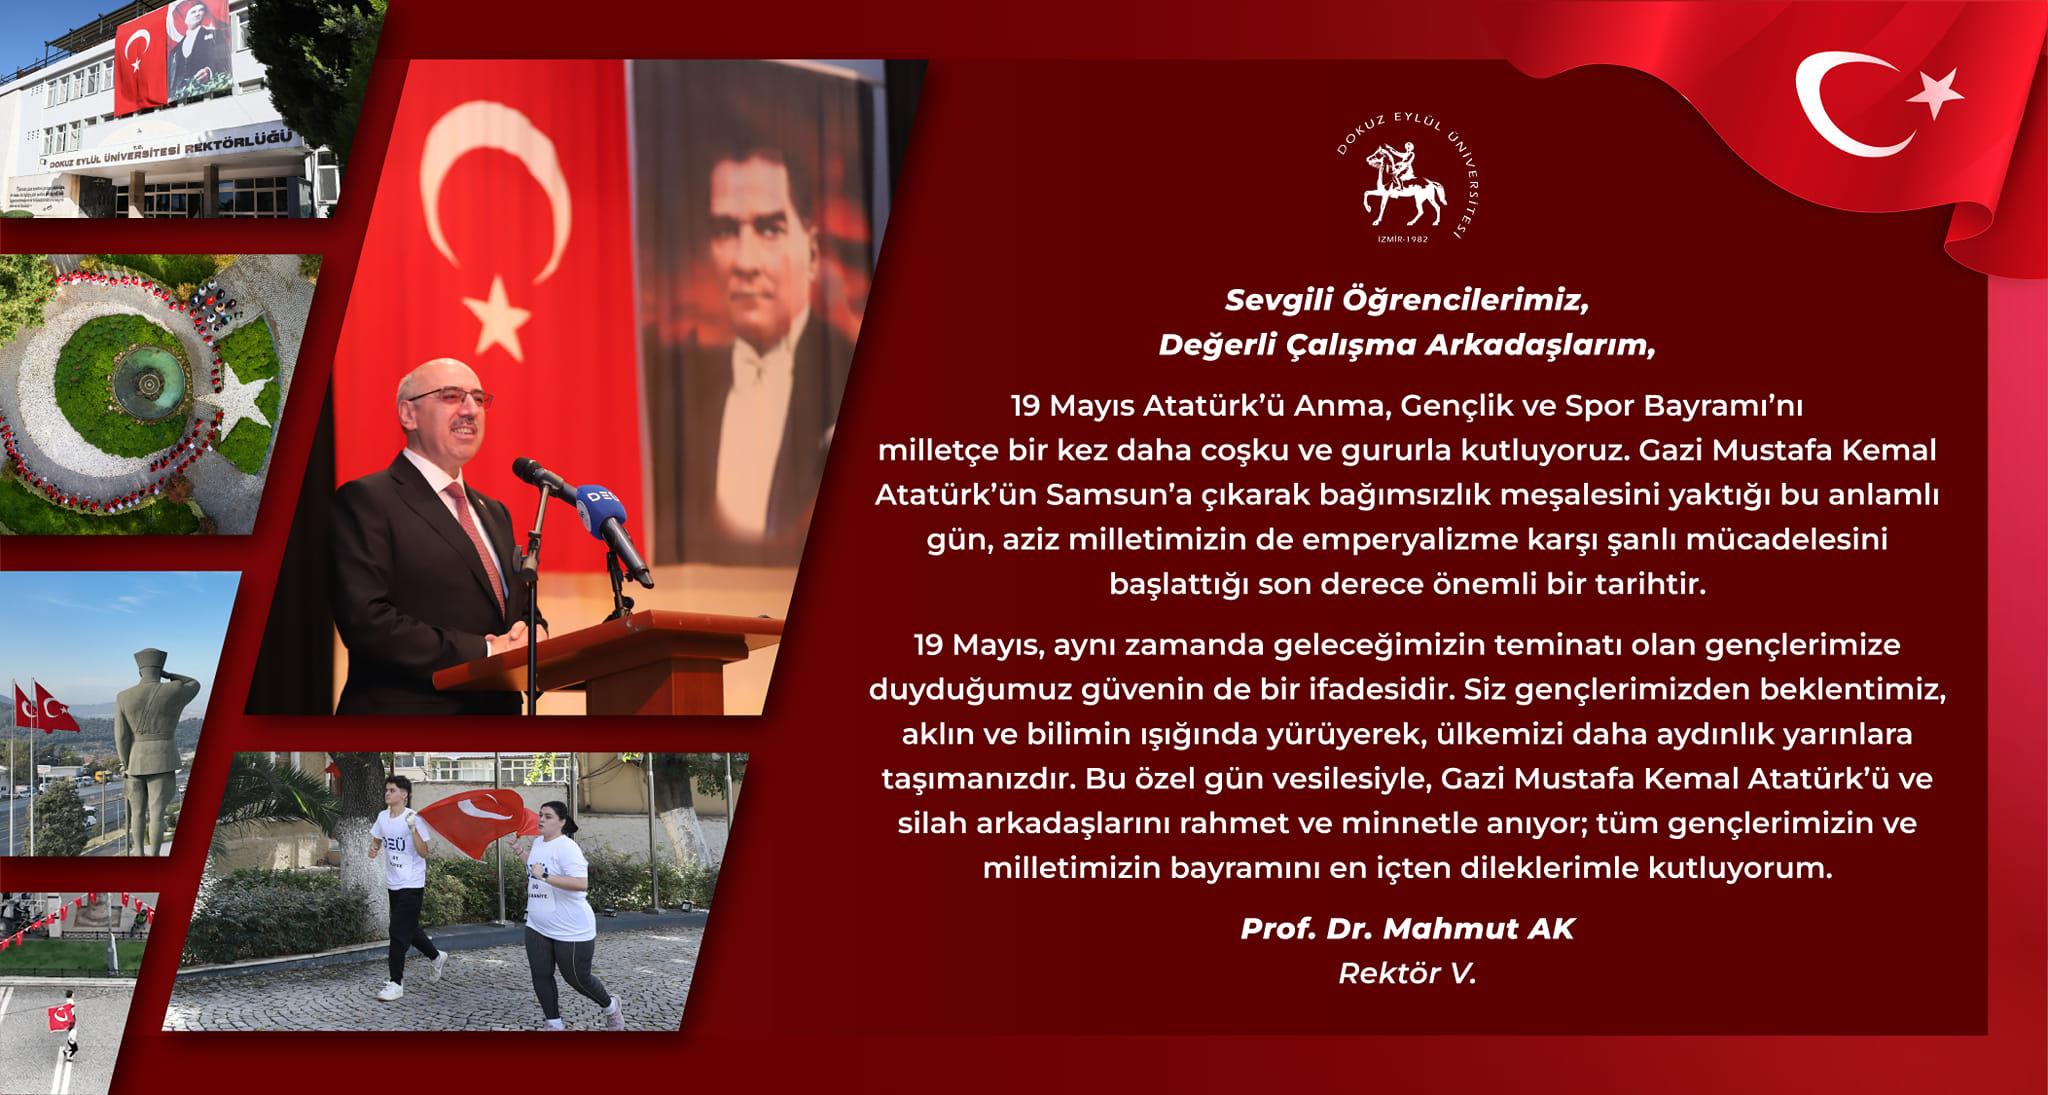 Dokuz Eylül Üniversitesi Rektörü Prof. Dr. Mahmut Ak, 19 Mayıs Atatürk'ü Anma Gençlik ve Spor Bayramı için bir mesaj yayınladı